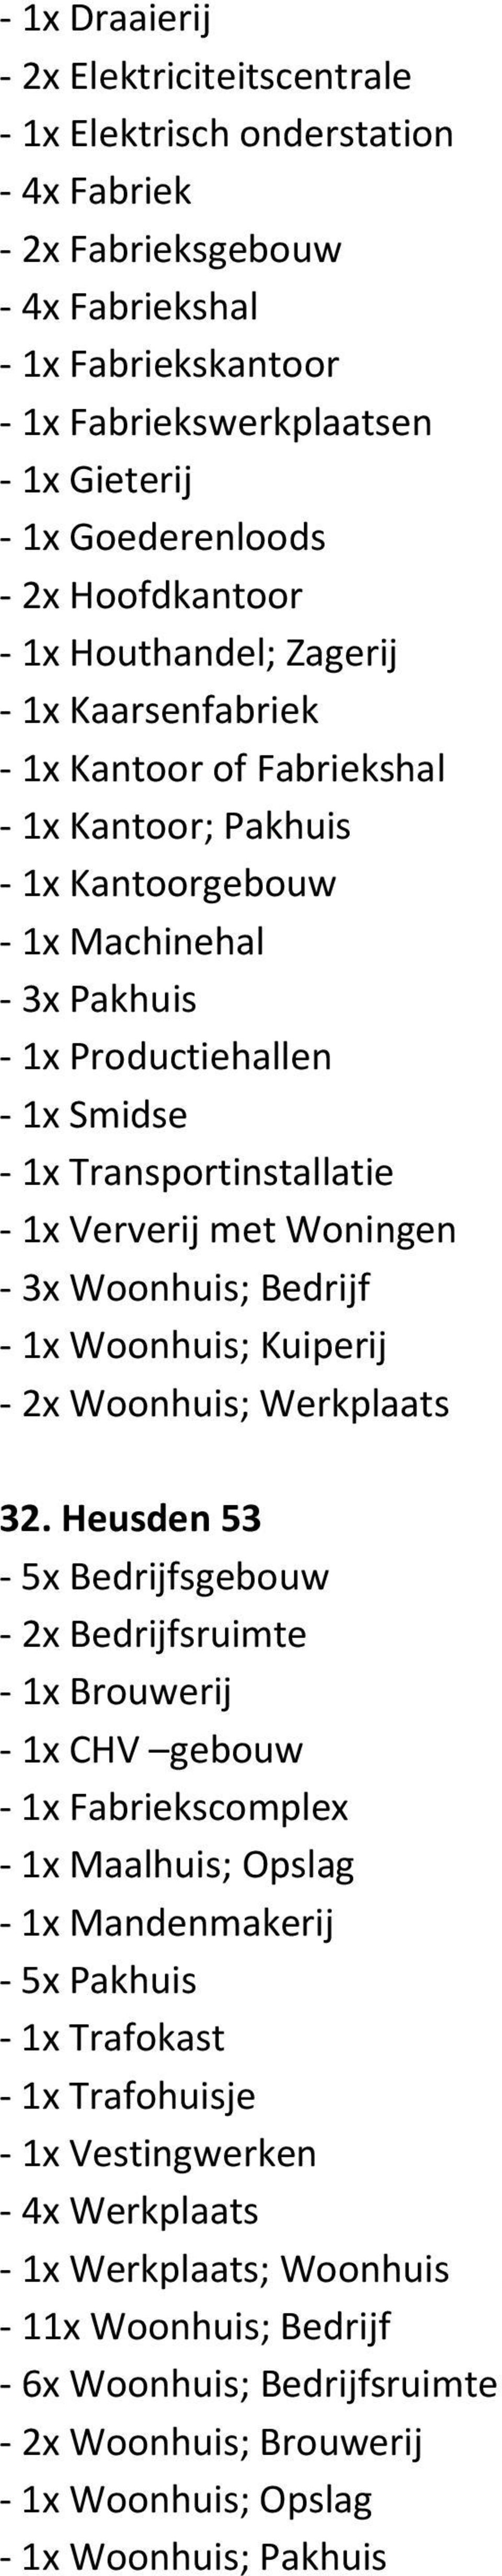 Woningen 3x Woonhuis; Bedrijf 1x Woonhuis; Kuiperij 2x Woonhuis; Werkplaats 32.